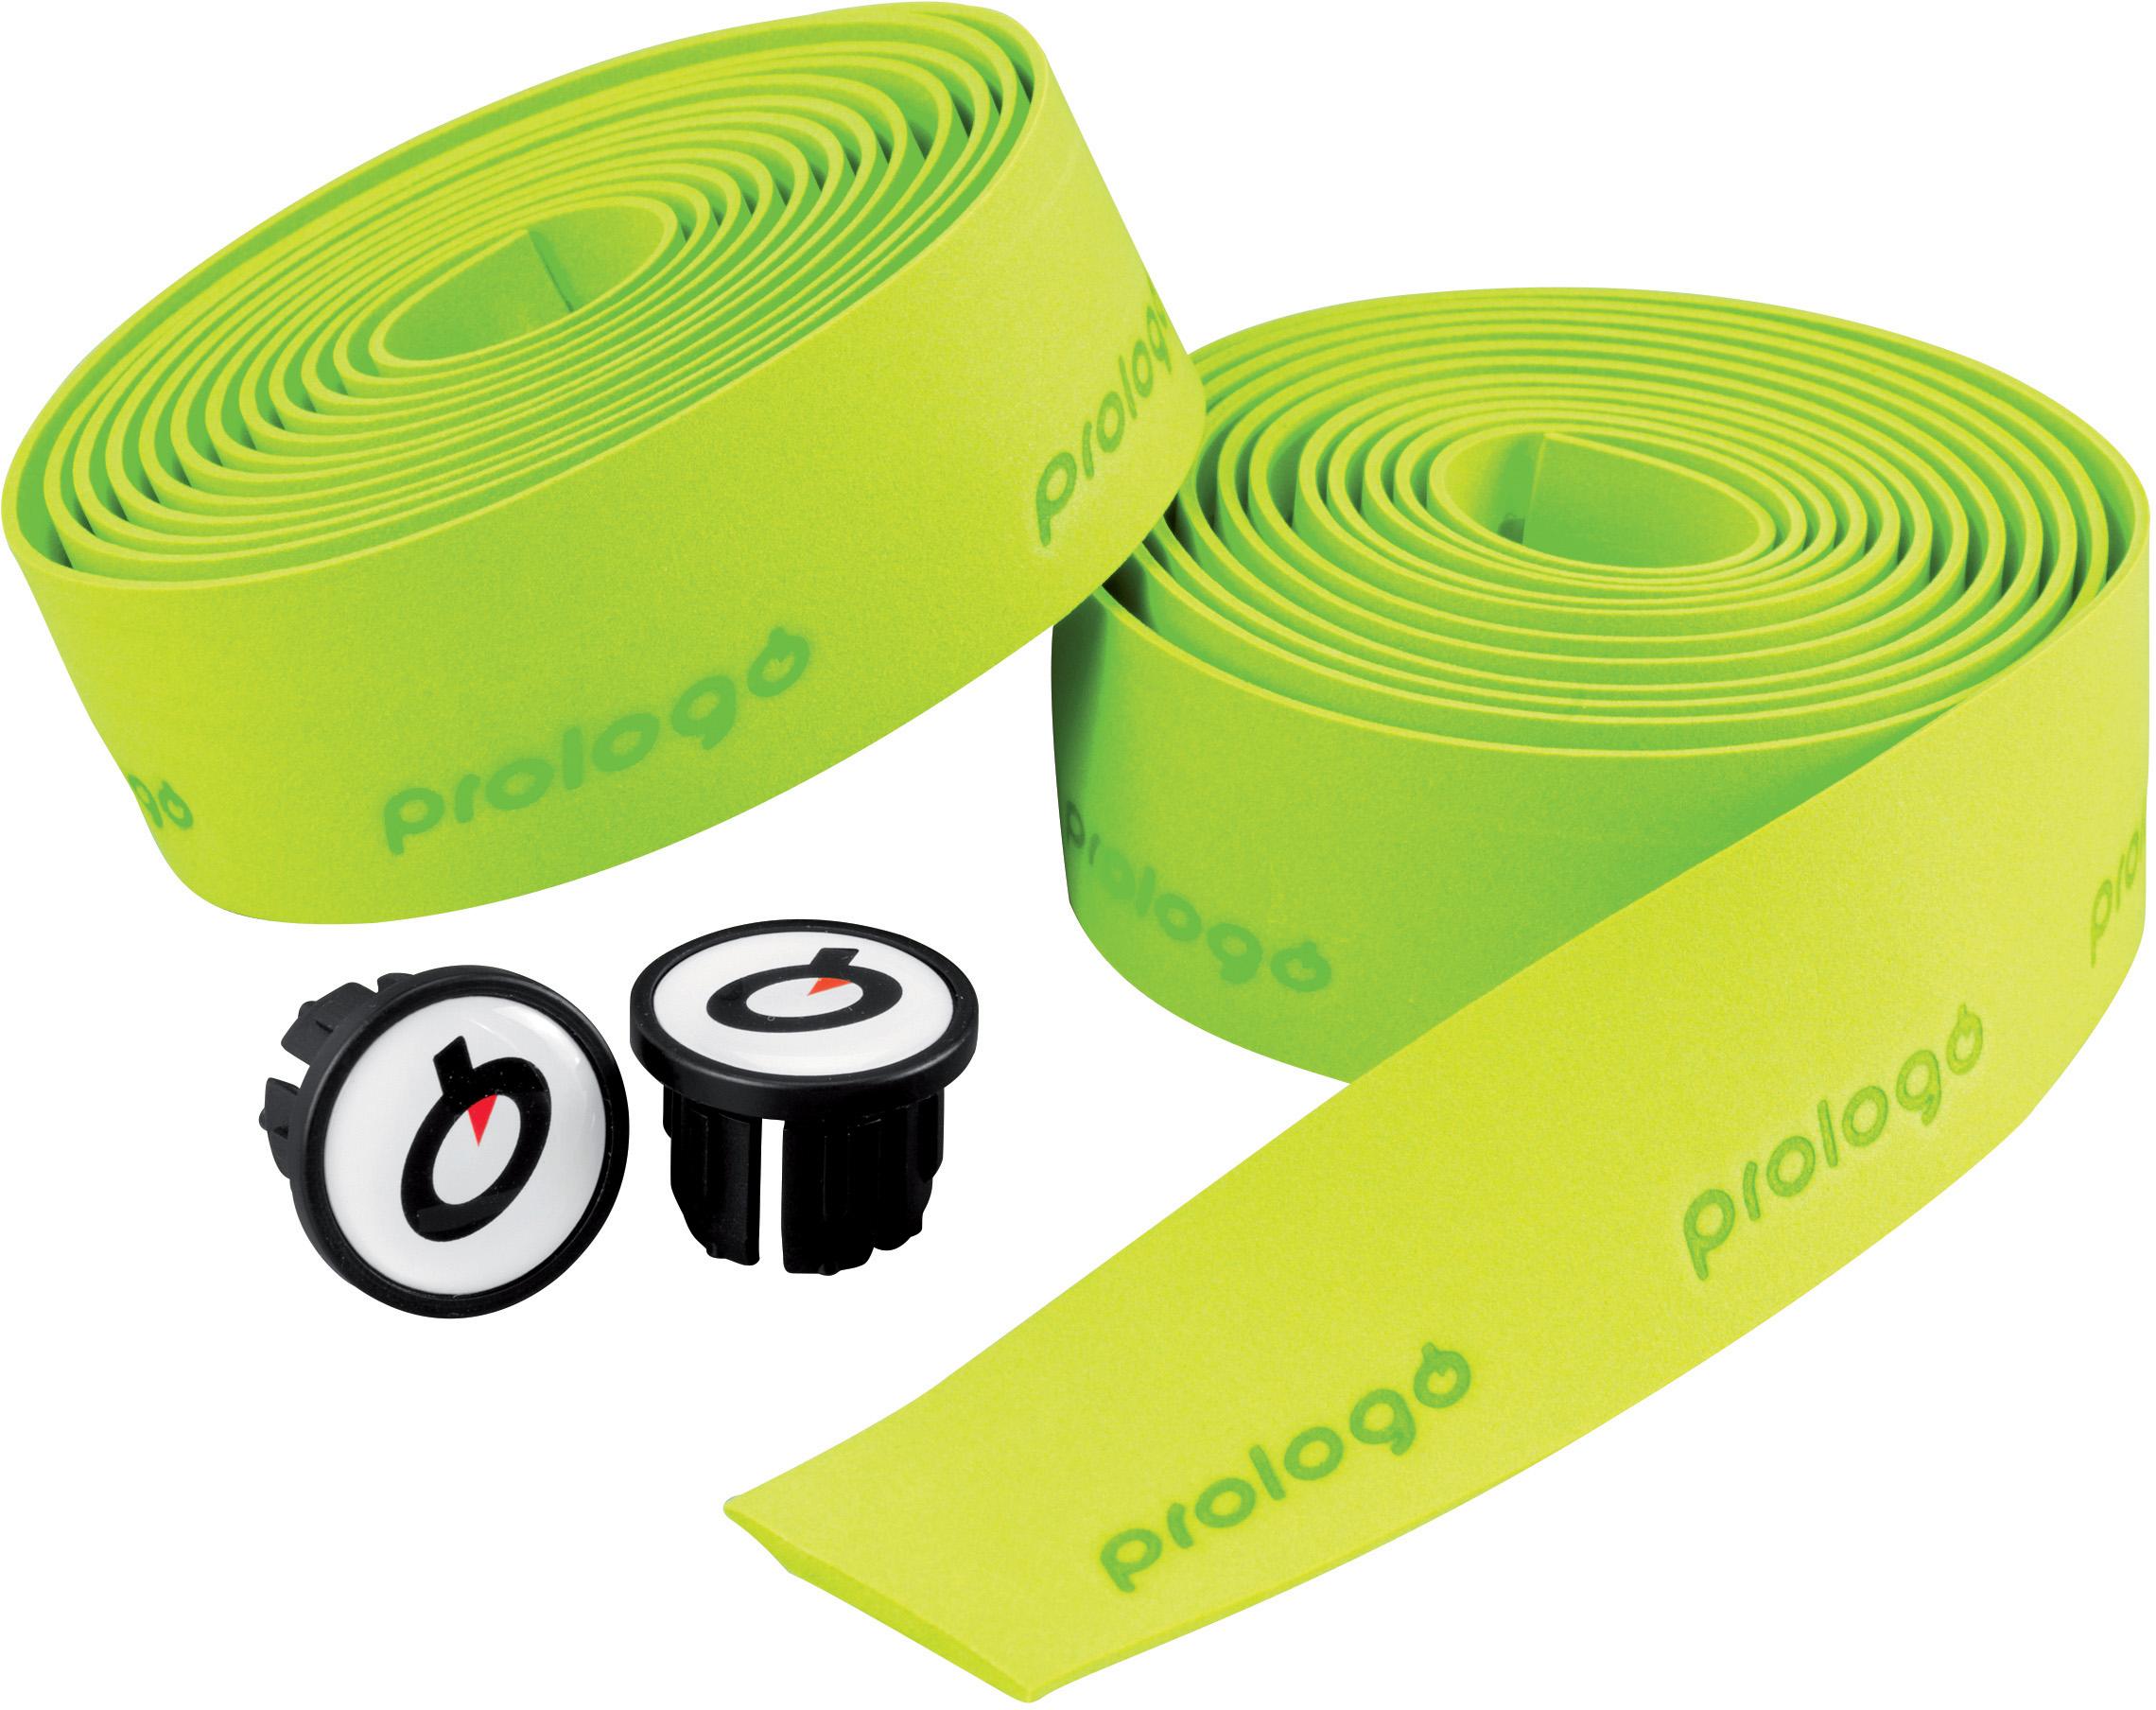 Prologo Plaintouch Handlebar Tape - Green Fluoro